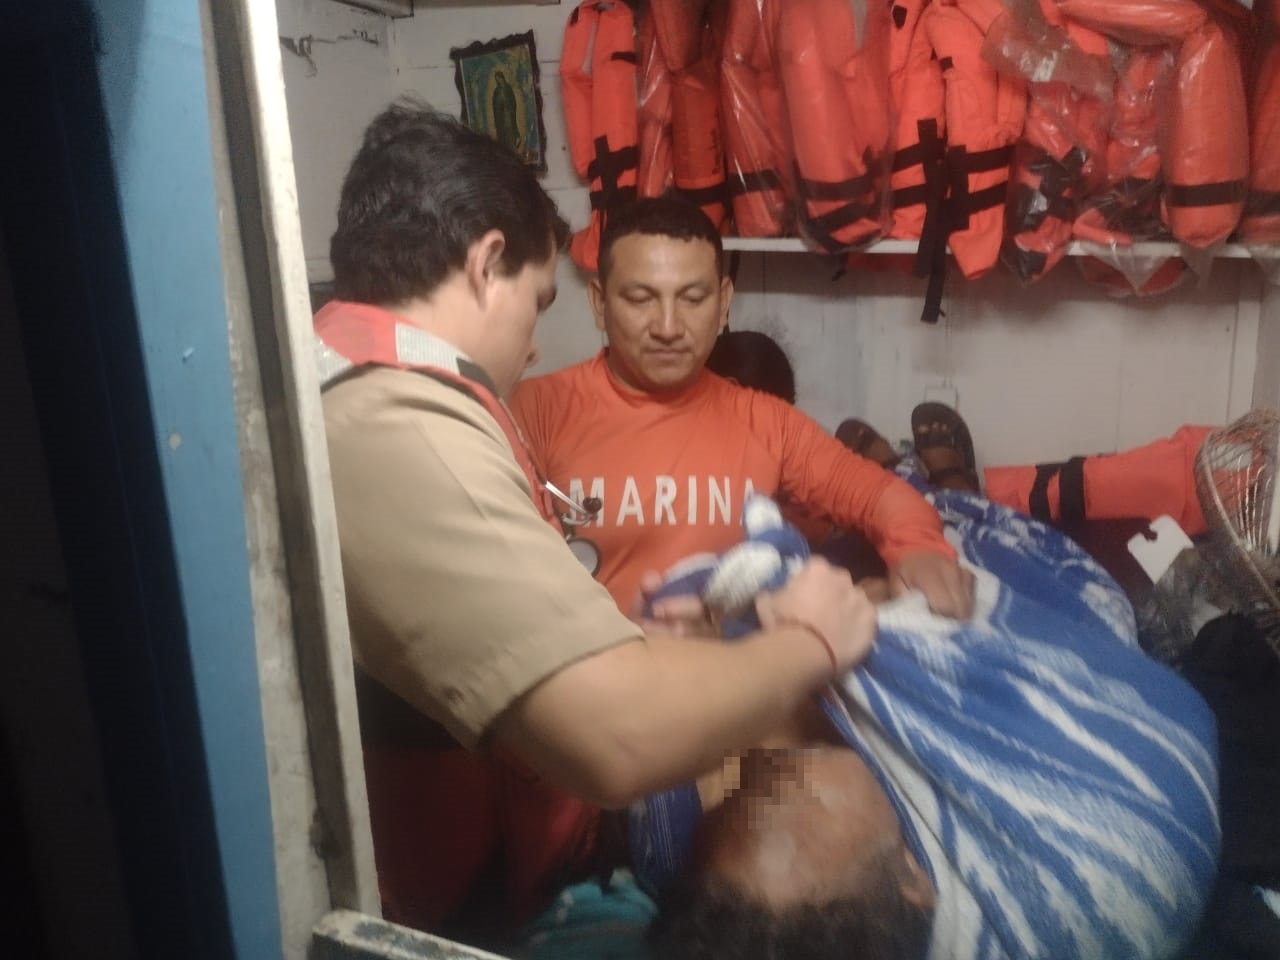 Secretaría de Marina rescata a un pescador en Progreso tras caer en un coma diabético en altamar